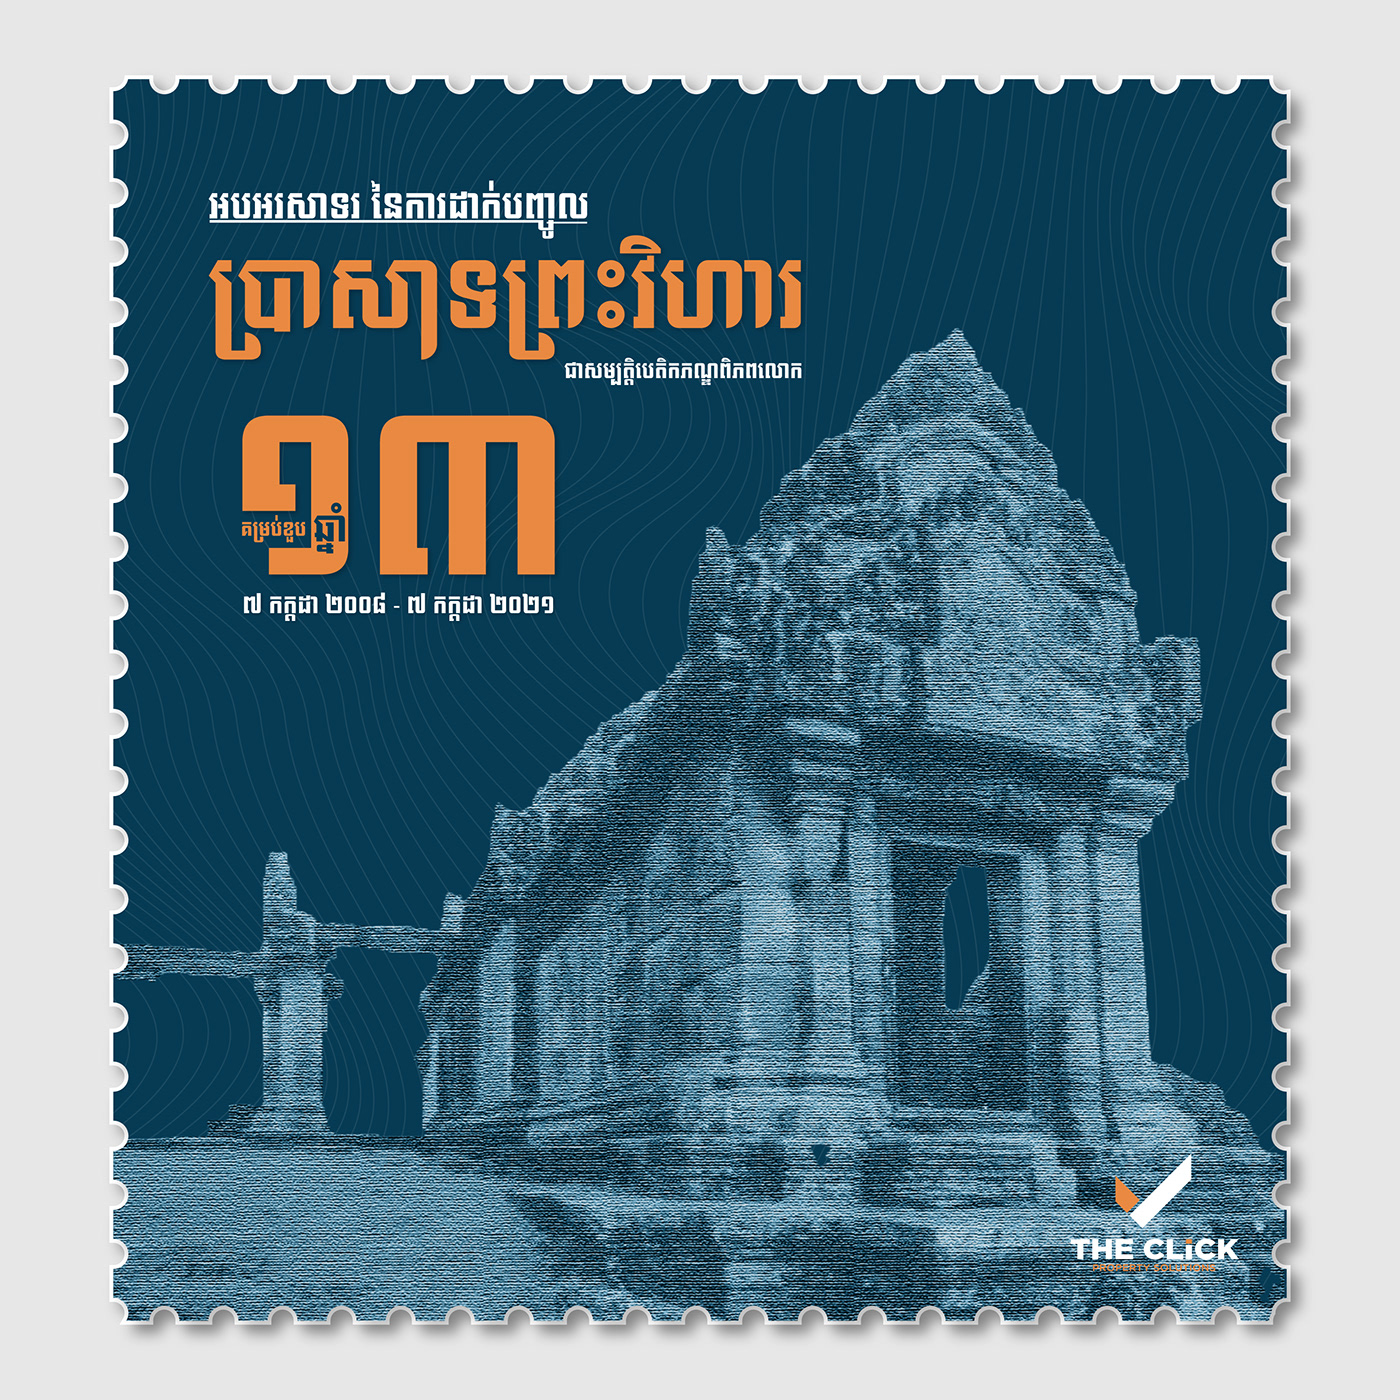 Preah Vihear Temple of Preah Vihear